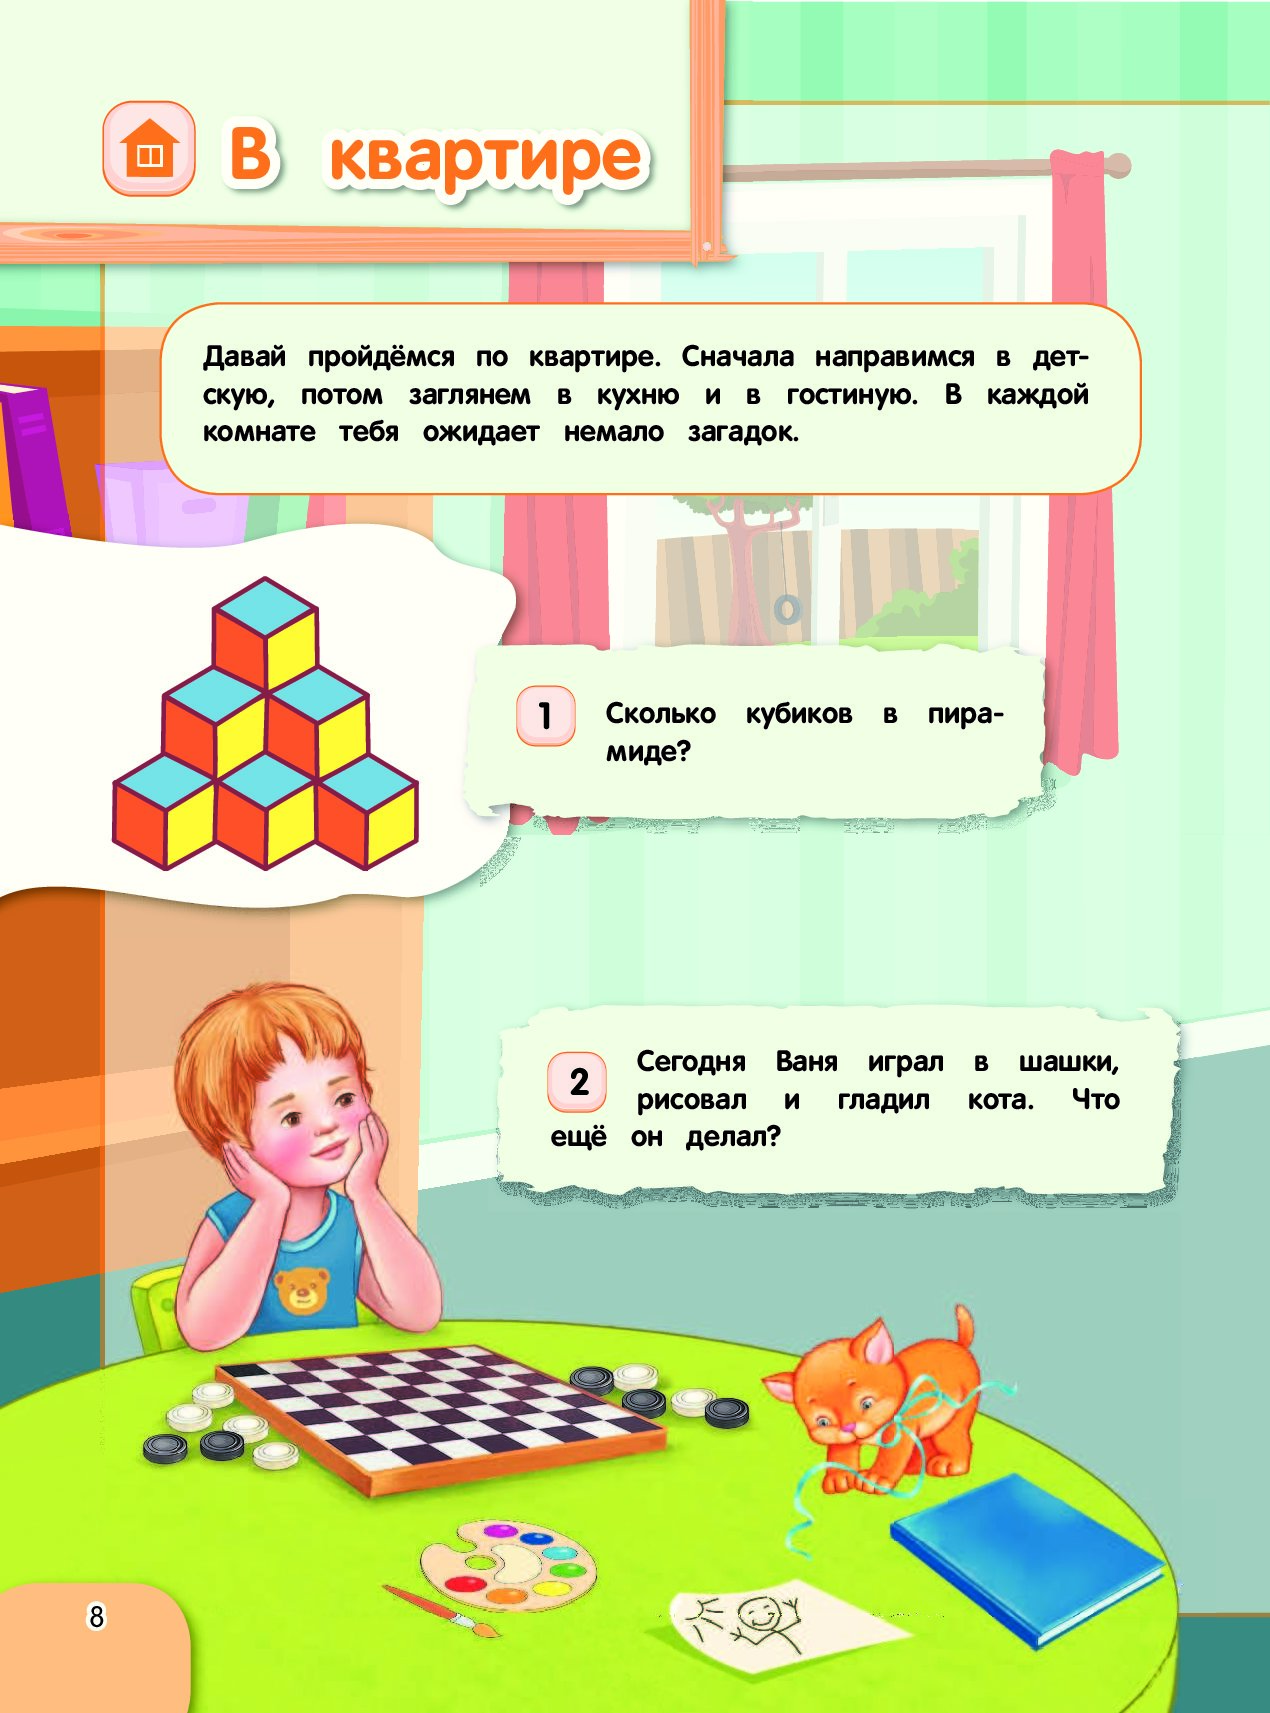 Интеллектуальные загадки с ответами для детей: логические загадки и задачи онлайн